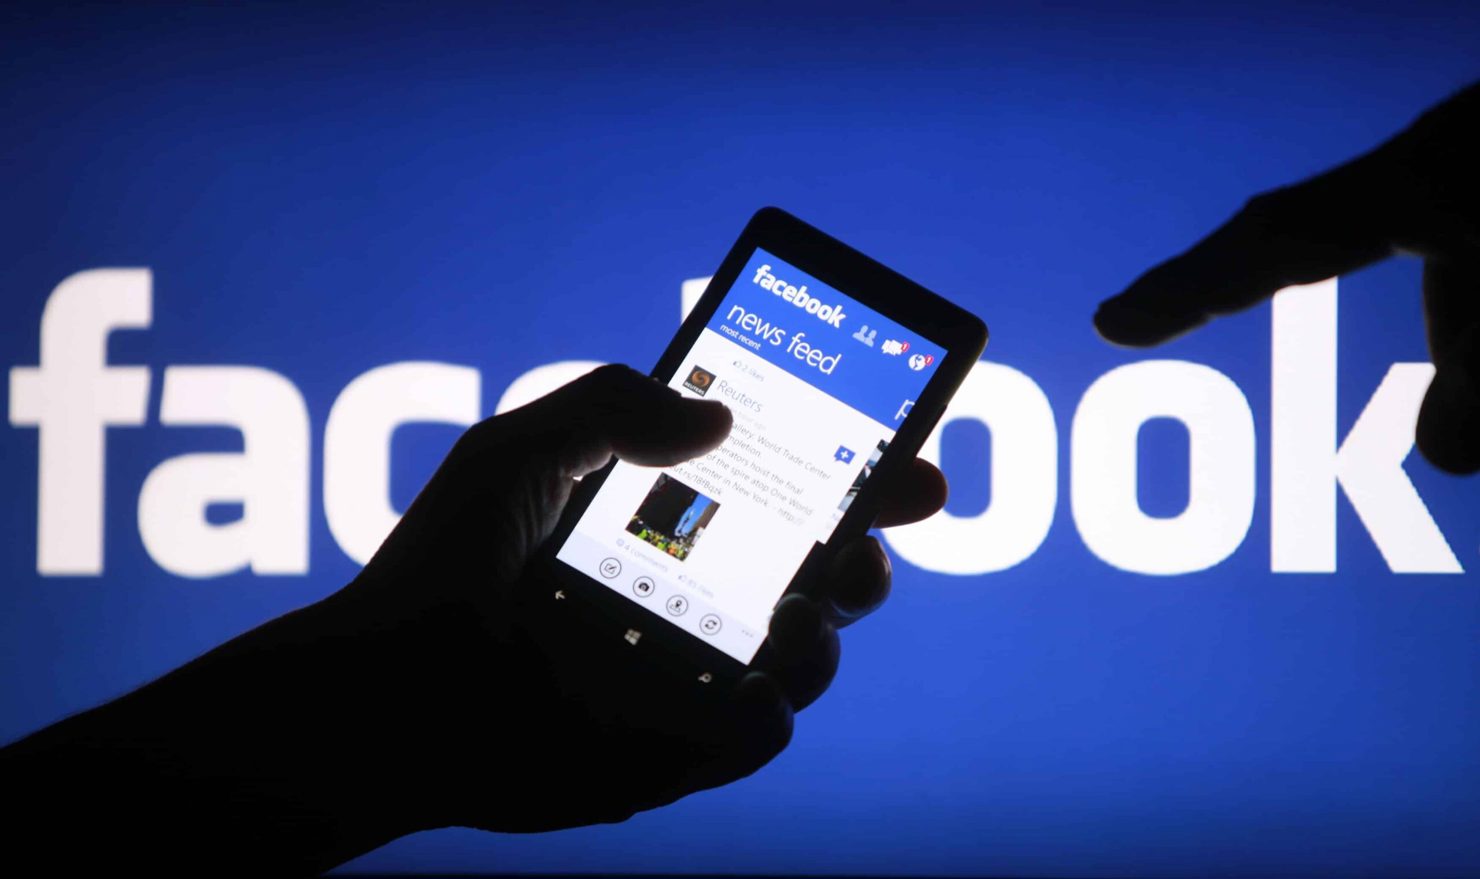 Chính phủ Hà Lan đang xem xét việc cấm hoàn toàn Facebook tại nước này.